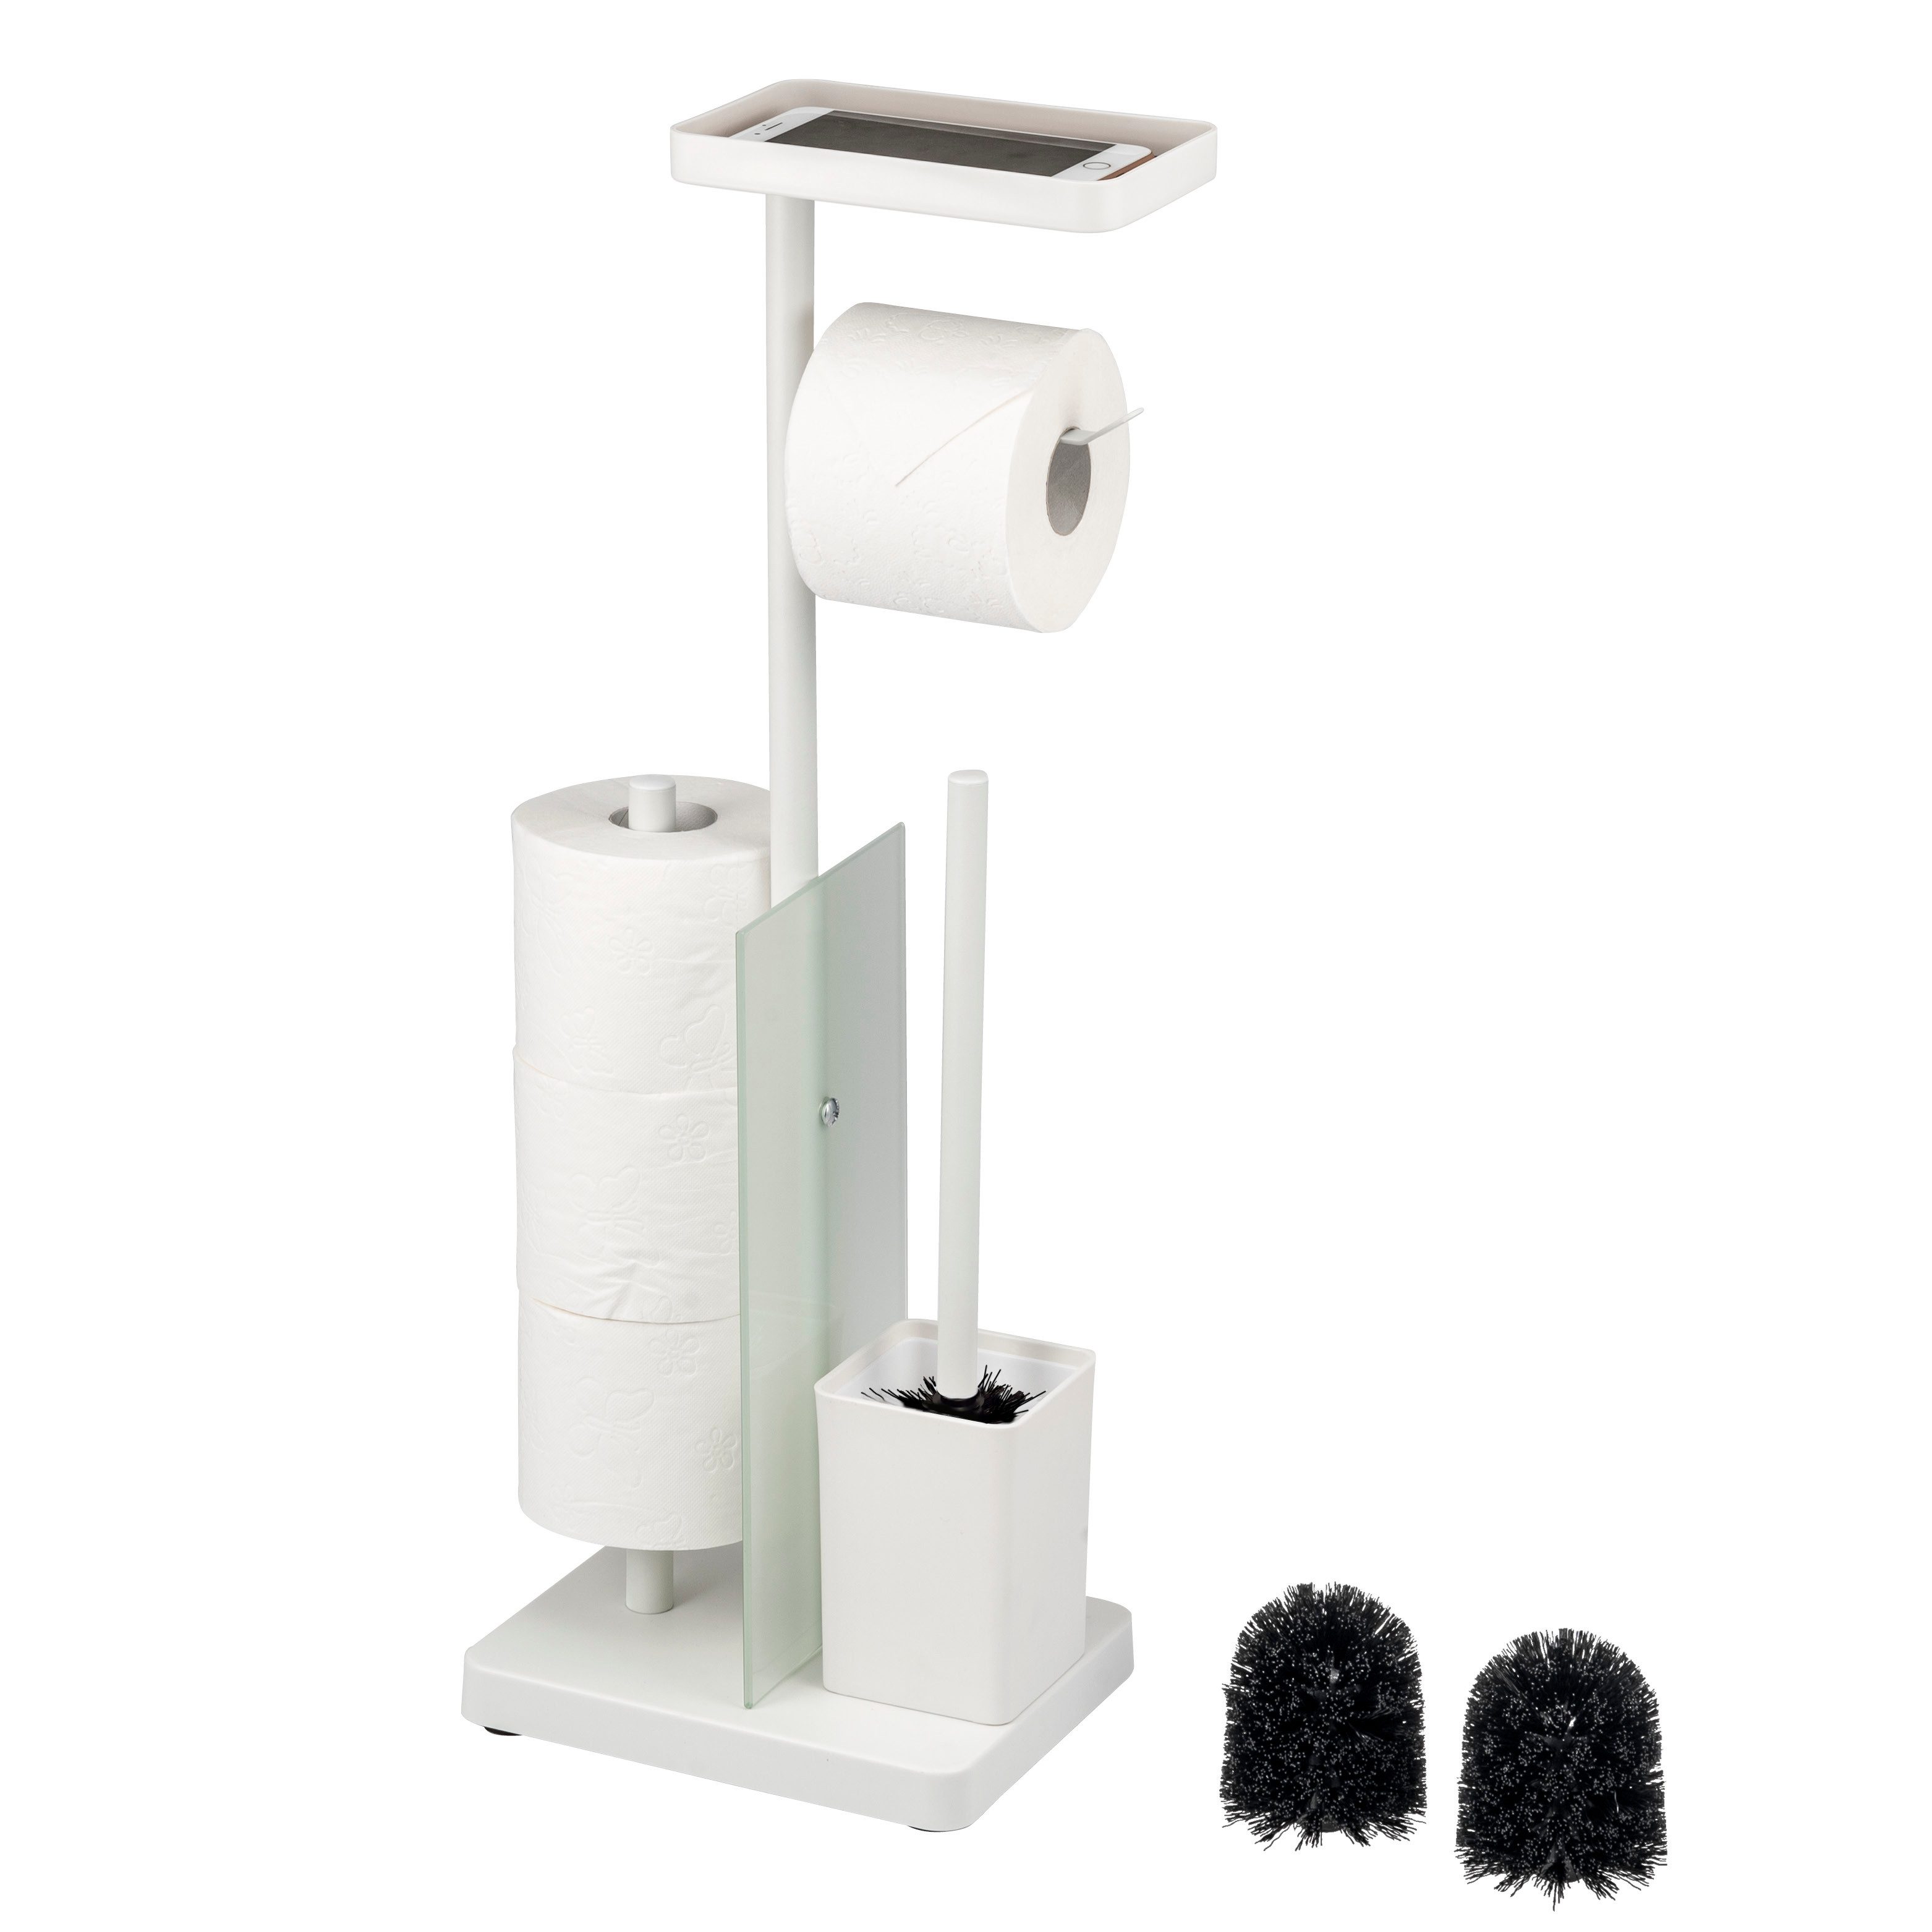 eluno WC-Garnitur 4in1, WC-Bürste, Rollenhalter, Ablage Glas/Metall weiß